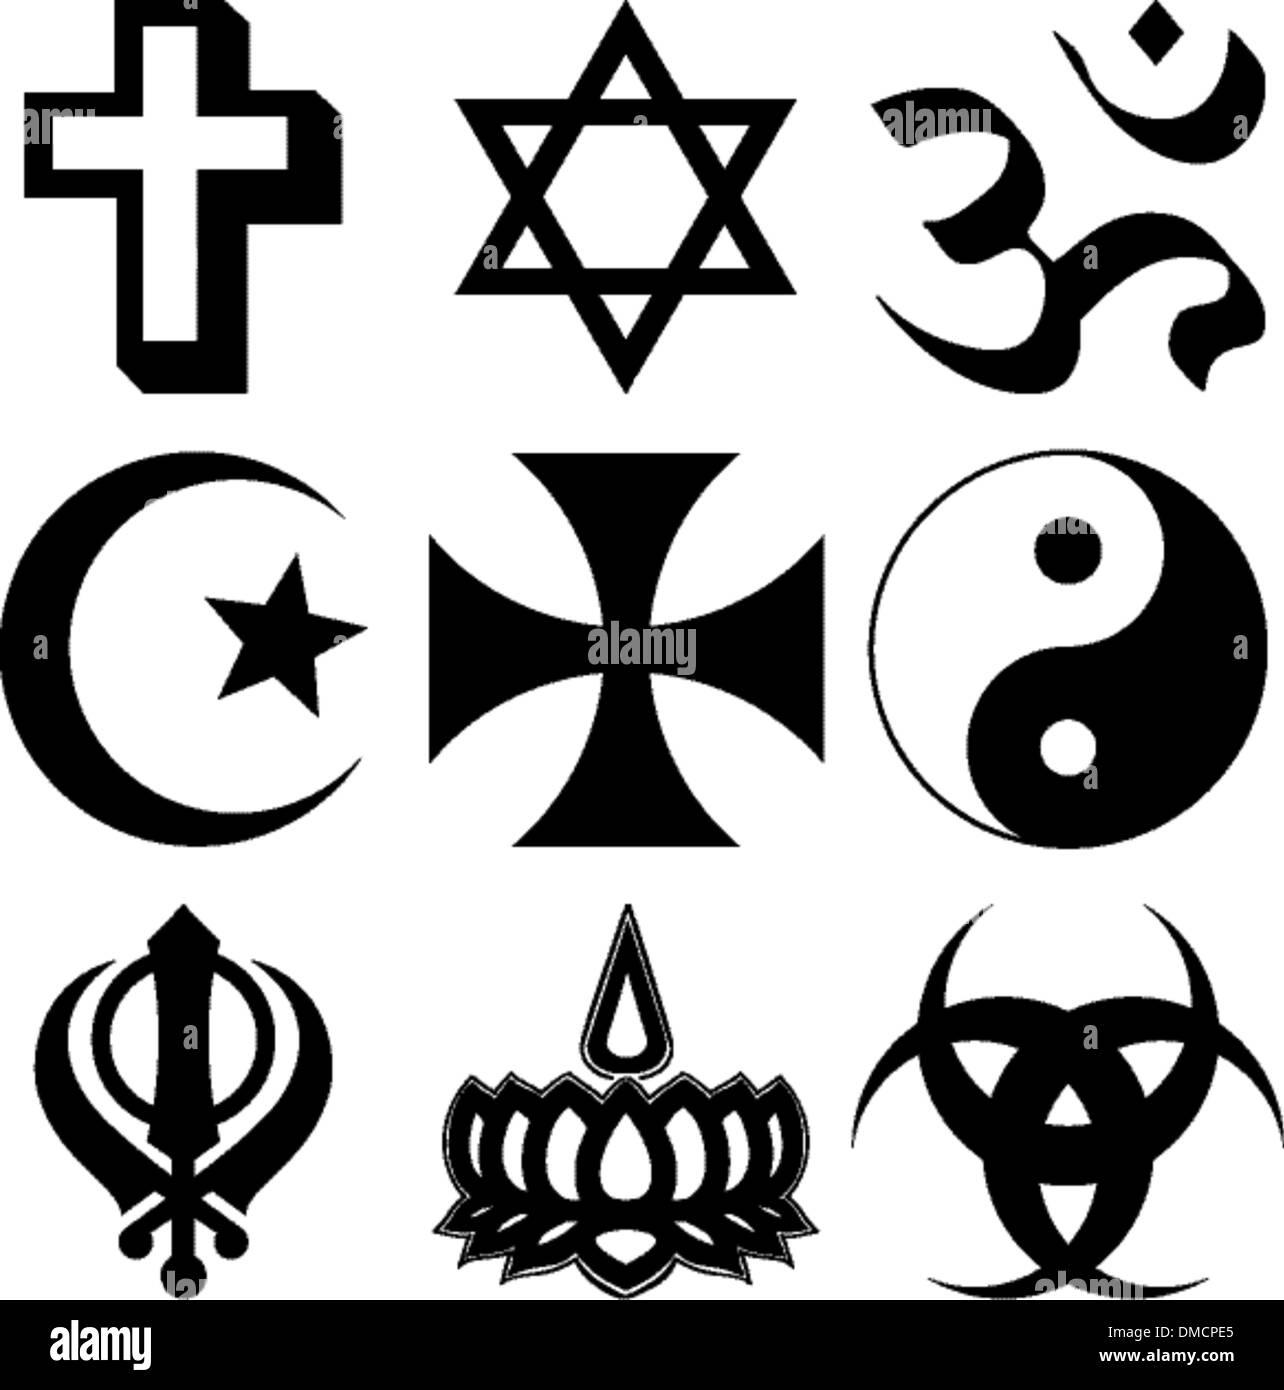 Religious symbols Stock Vector